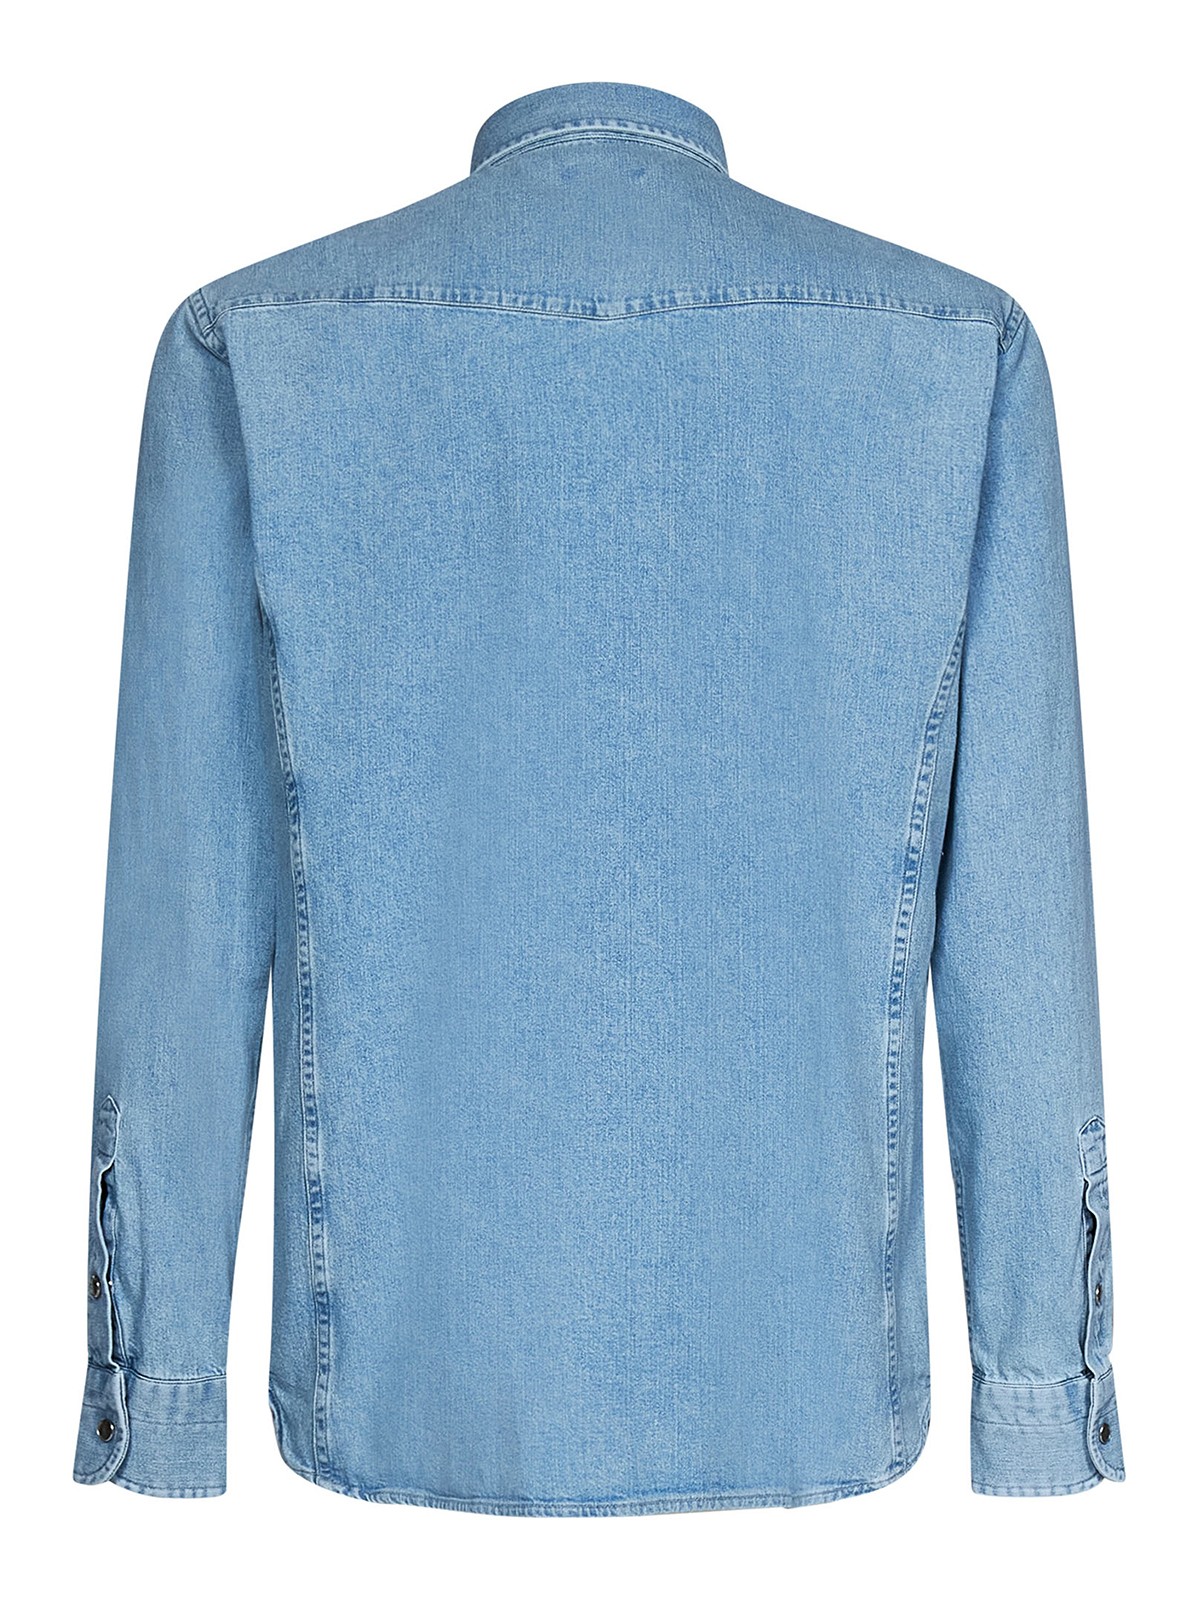 Shirts Tom Ford - Light blue cotton shirt - HDS001FMC032S23HB308